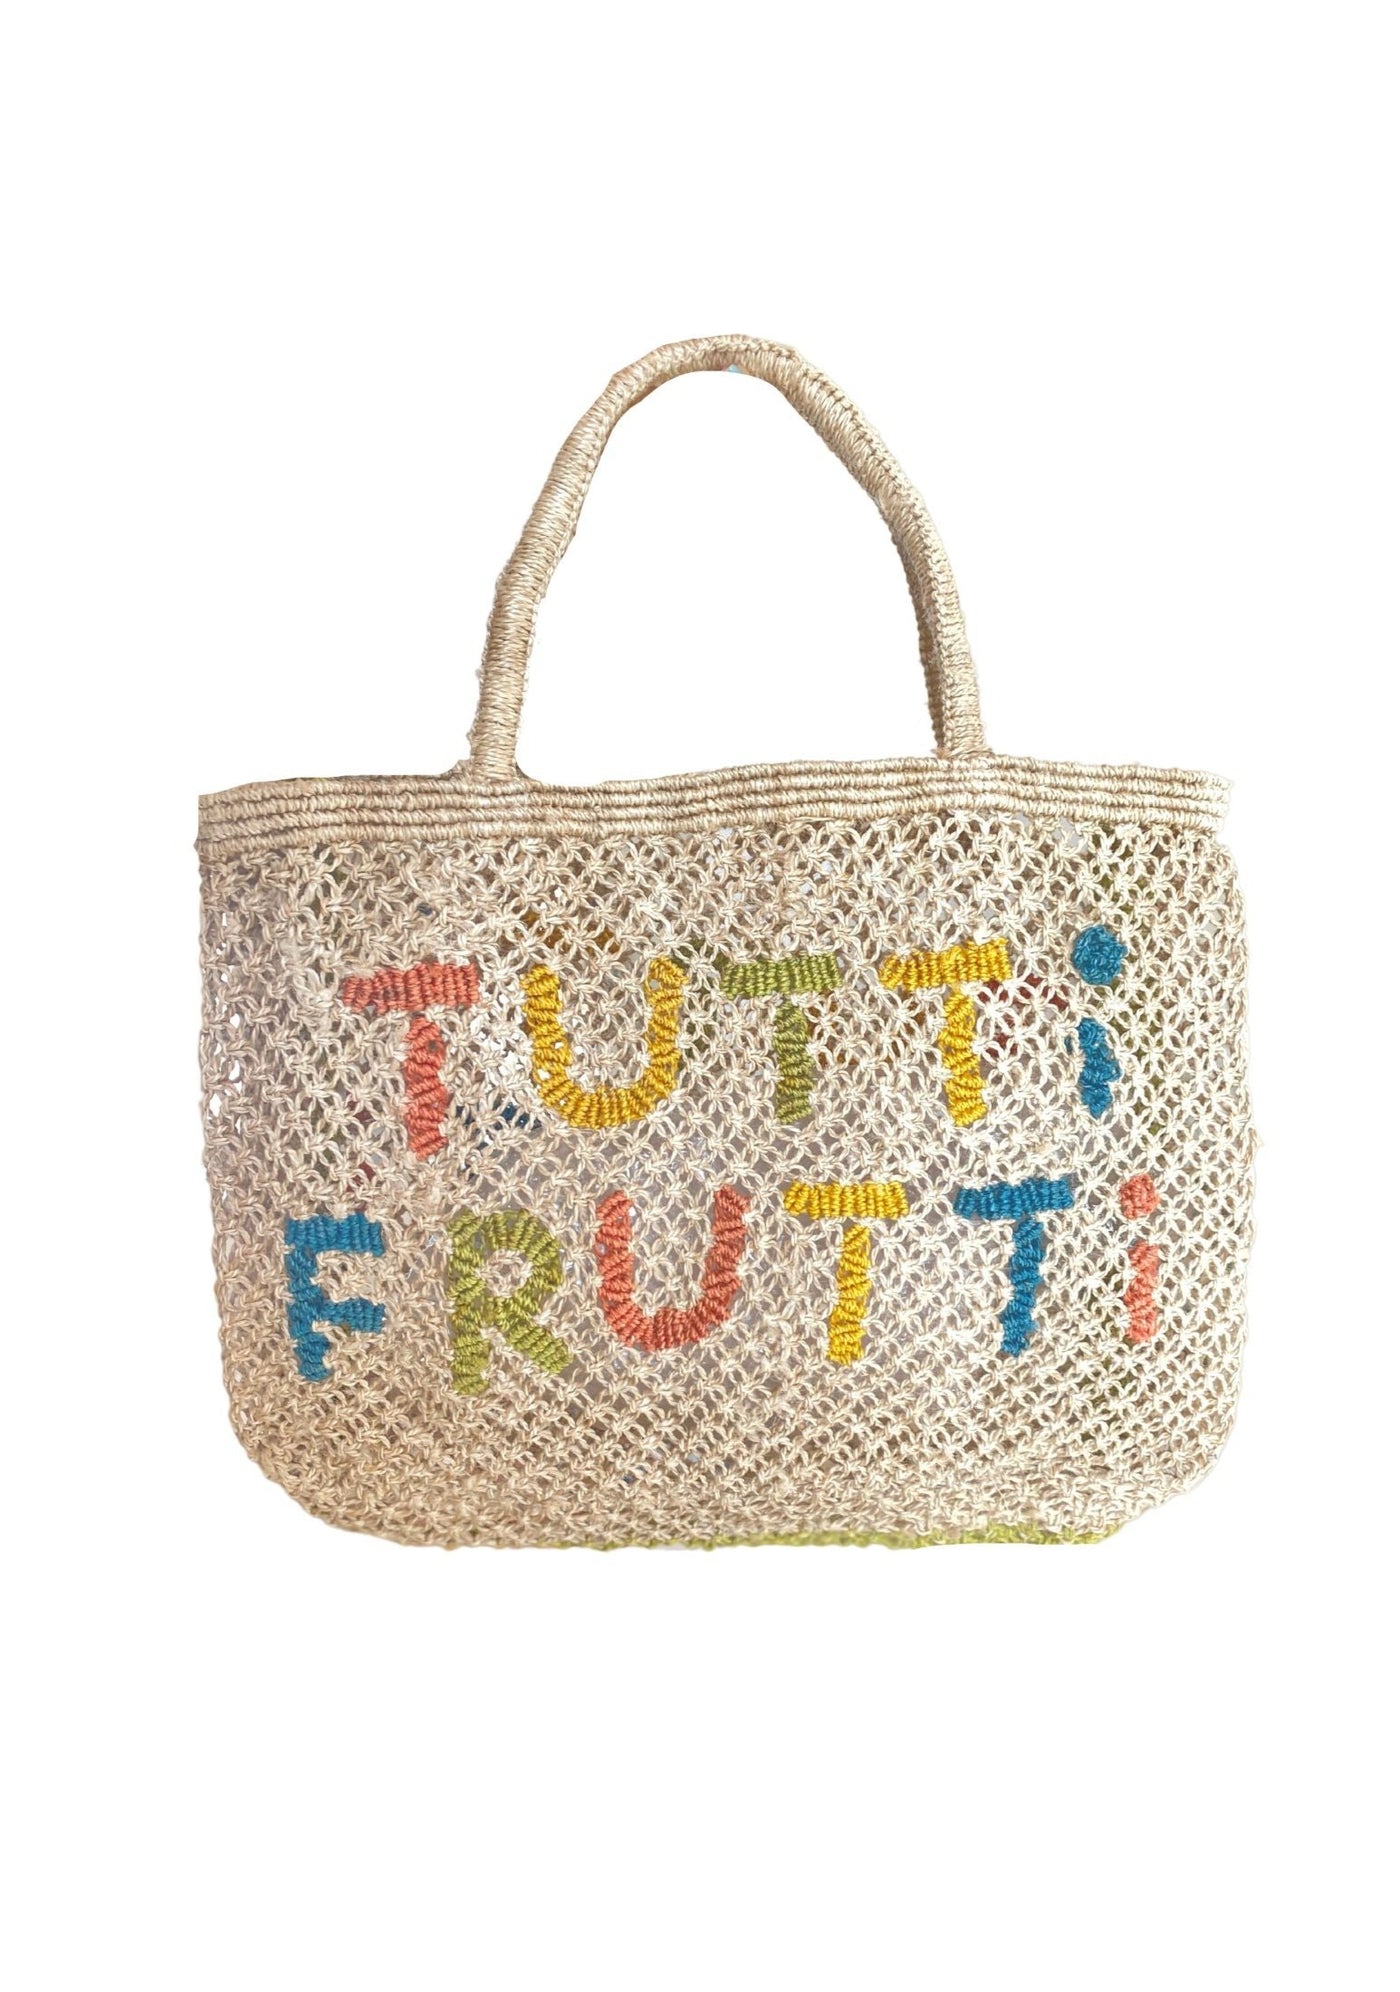 Tutti Frutti - Natural and multi